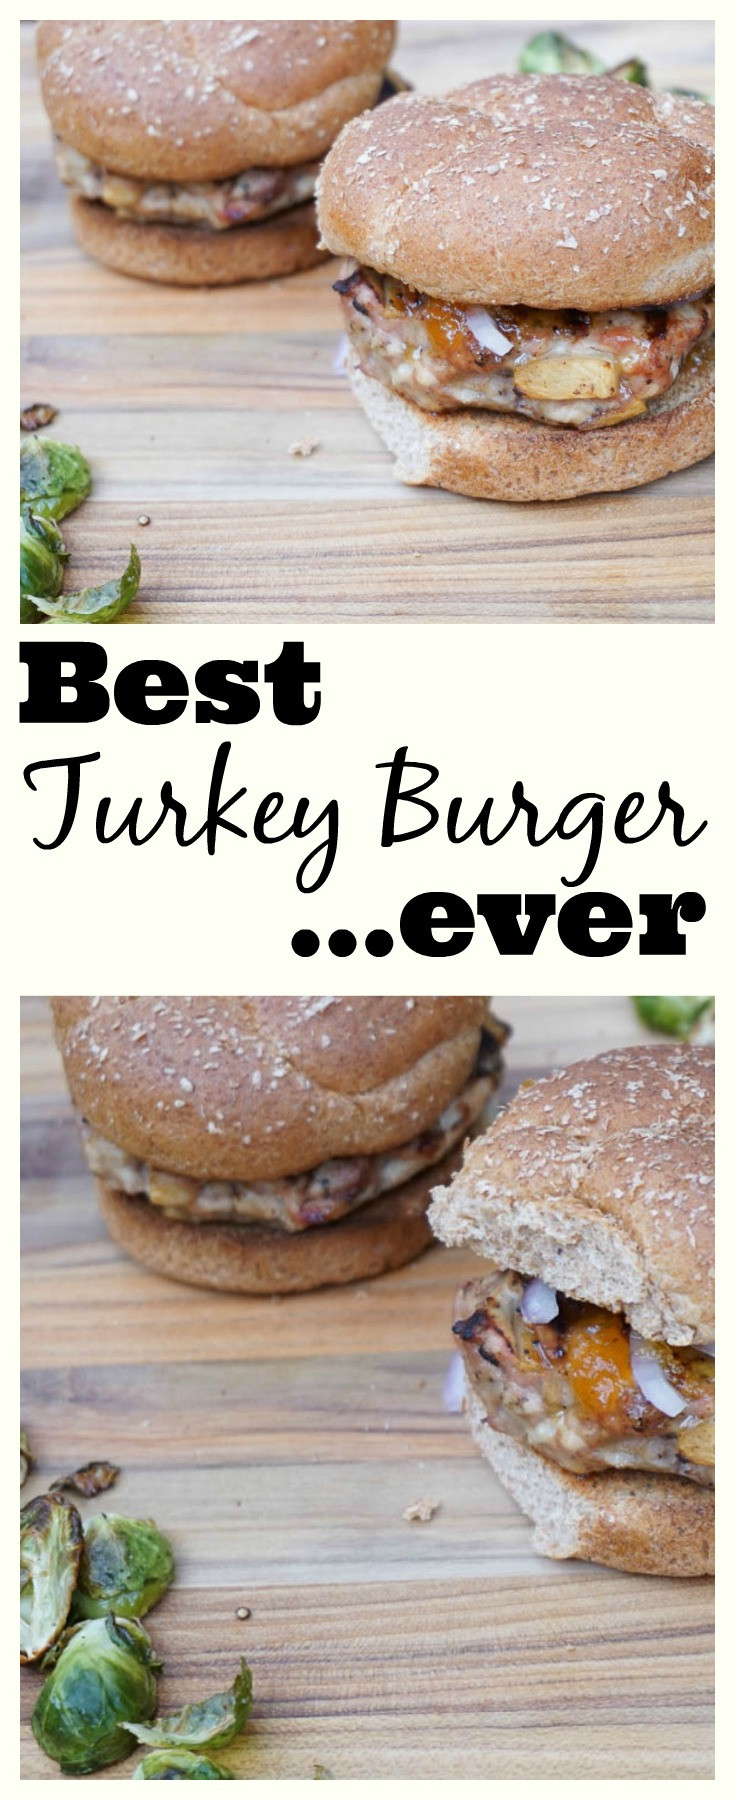 Best Thanksgiving Turkey Ever
 Best turkey burger ever